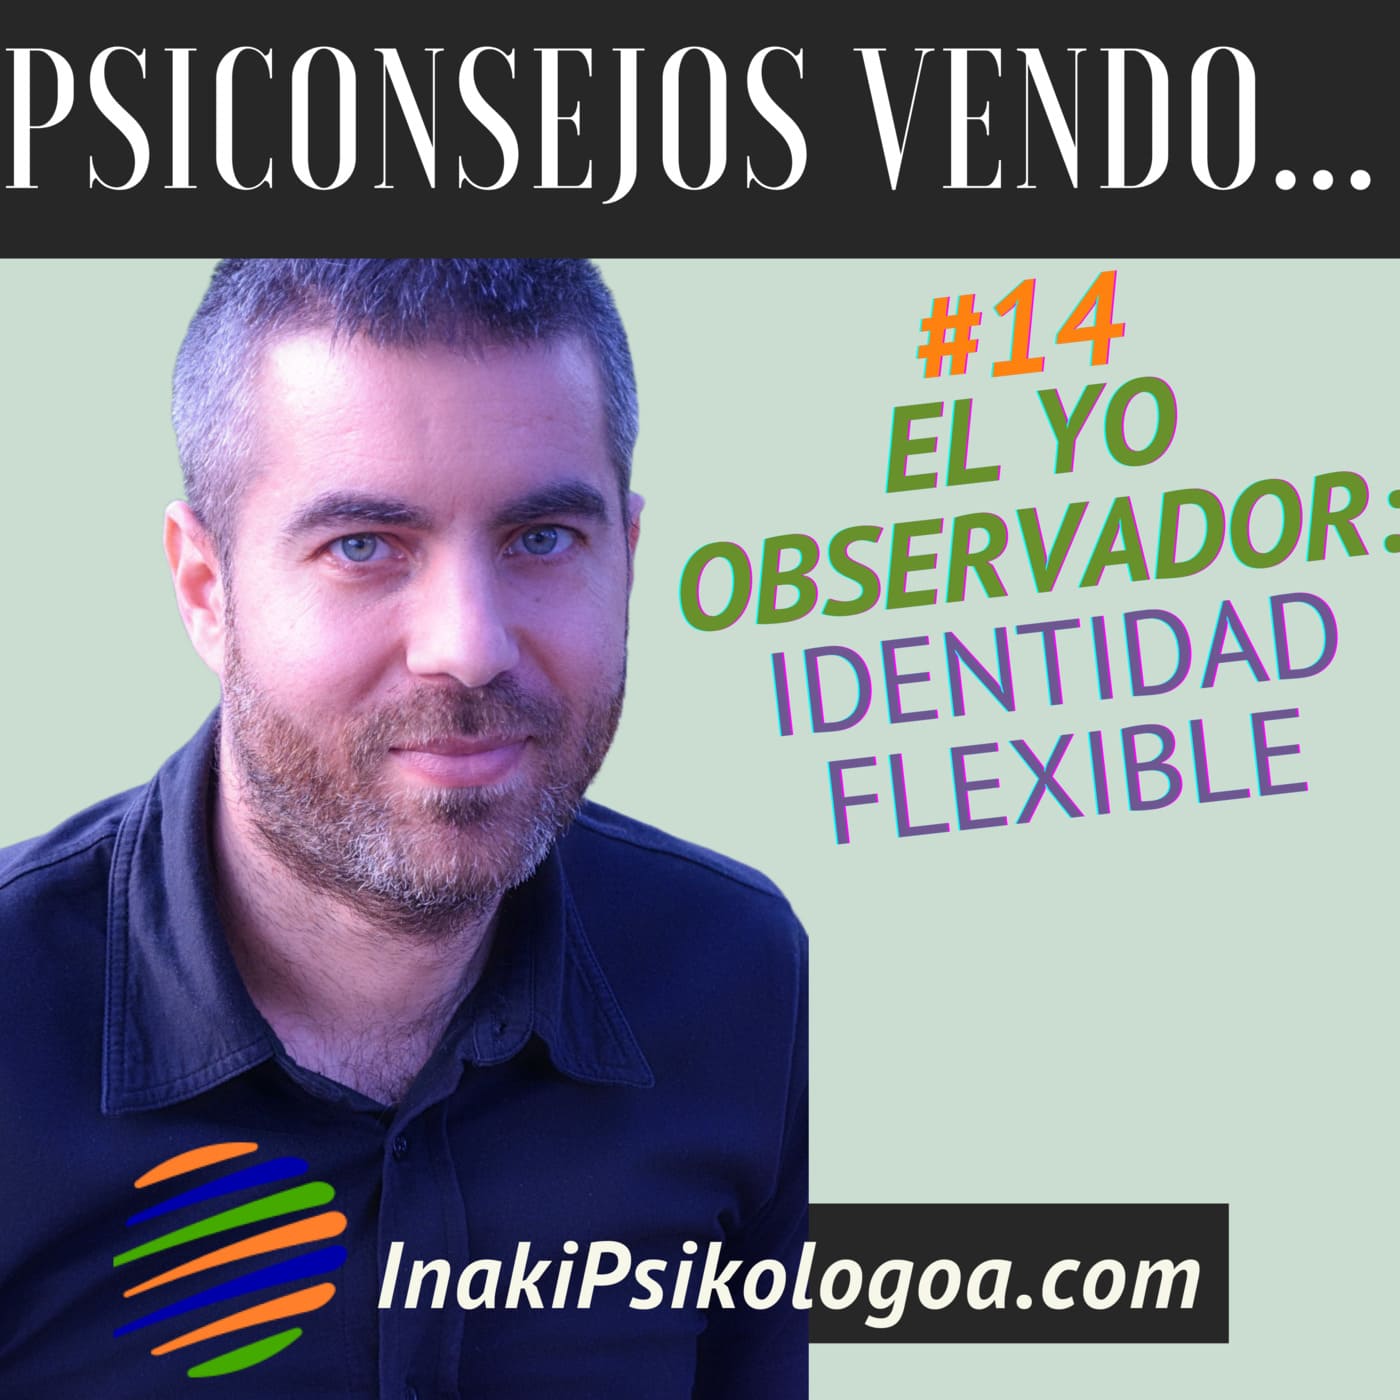 El Yo observador: Identidad flexible – EP14